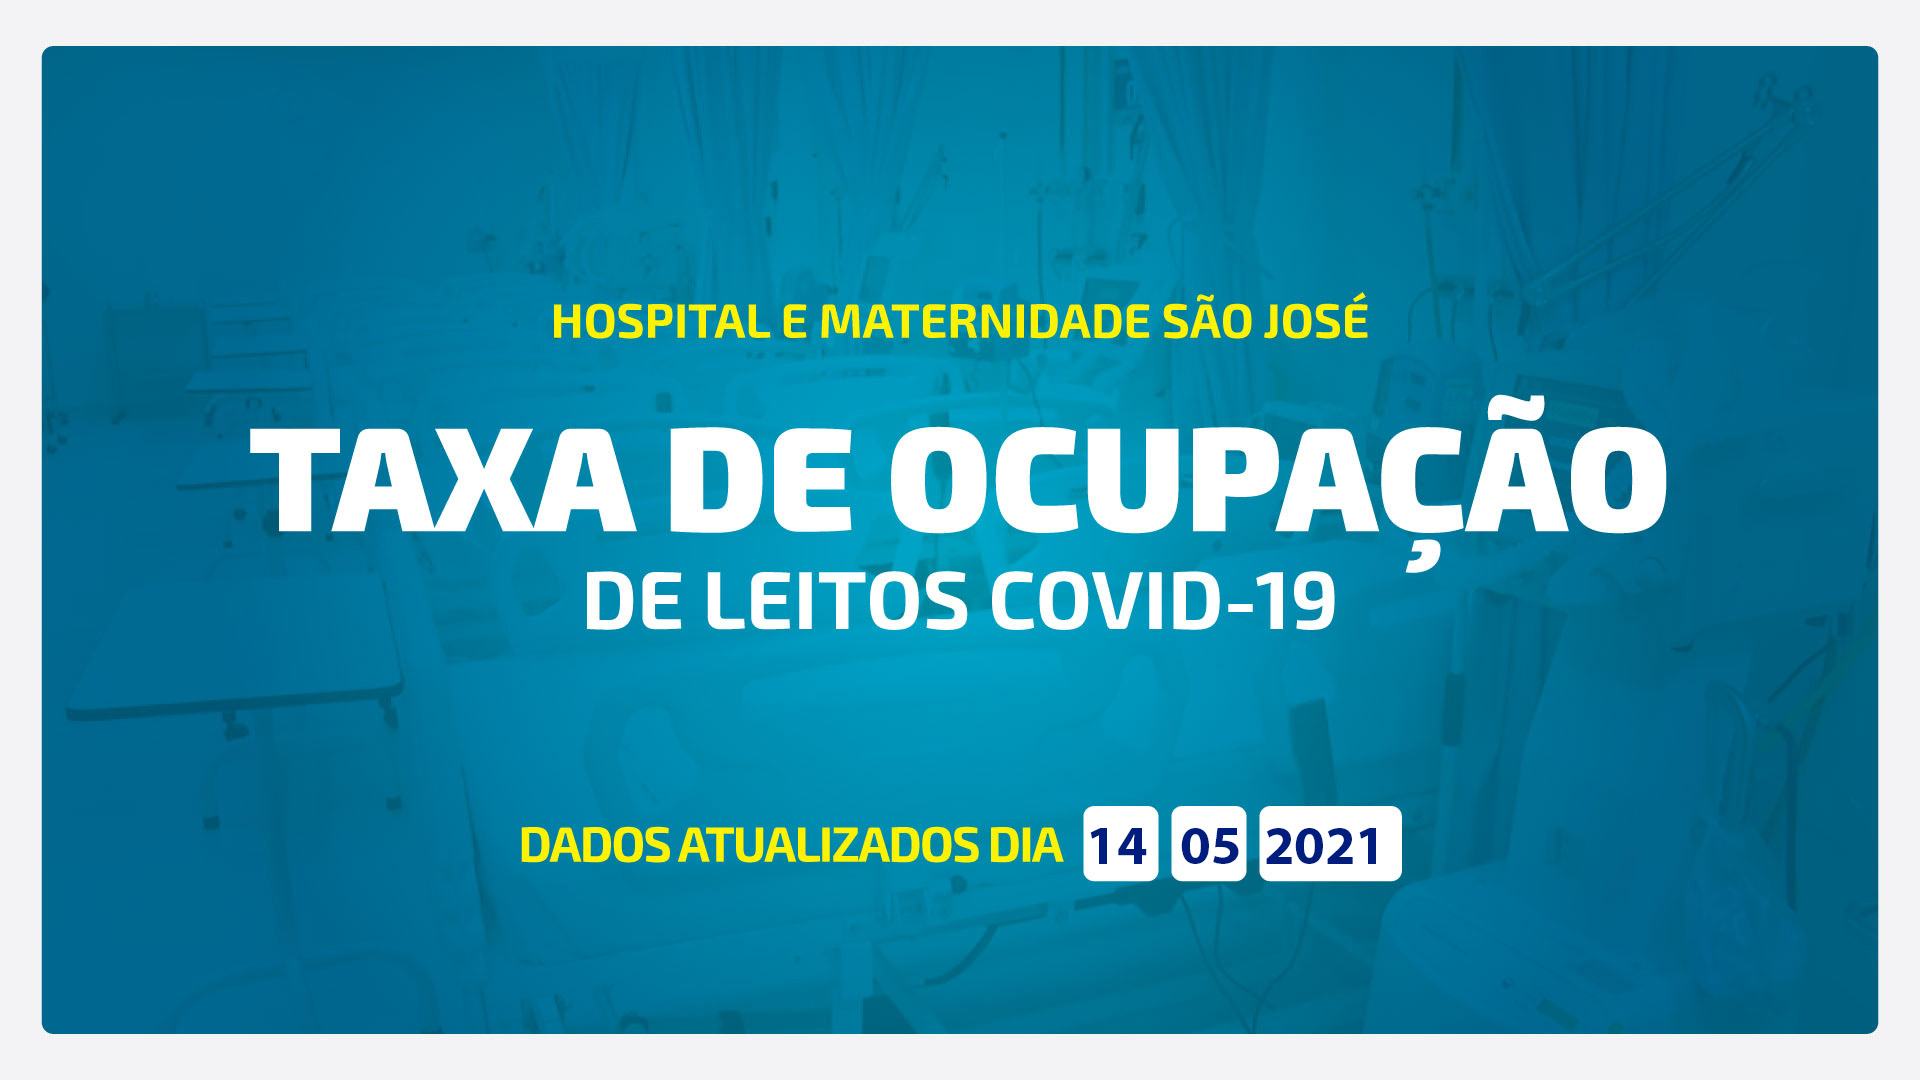 TAXA DE OCUPAÇÃO DE LEITOS DE COVID-19 ATUALIZADA DIA 14/05/2021